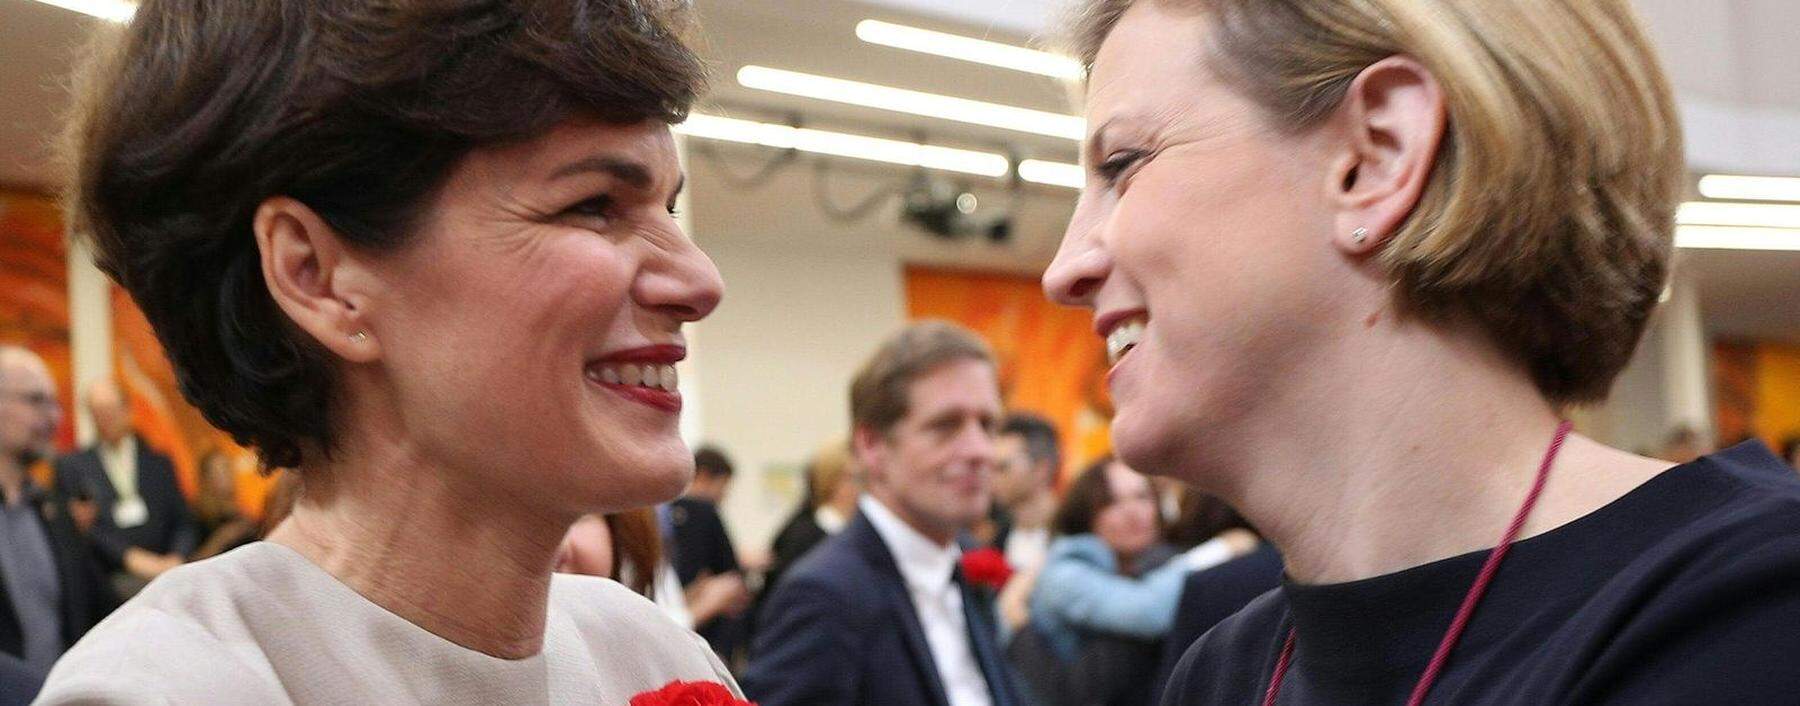 Damals durfte man sich noch persönlich näher kommen, heute geht es nur noch politisch: SPÖ-Vorsitzende Pamela Rendi-Wagner (l.) und Neos-Chefin Beate Meinl-Reisinger bei der konstituierenden Sitzung des Nationalrats vor einem Jahr.